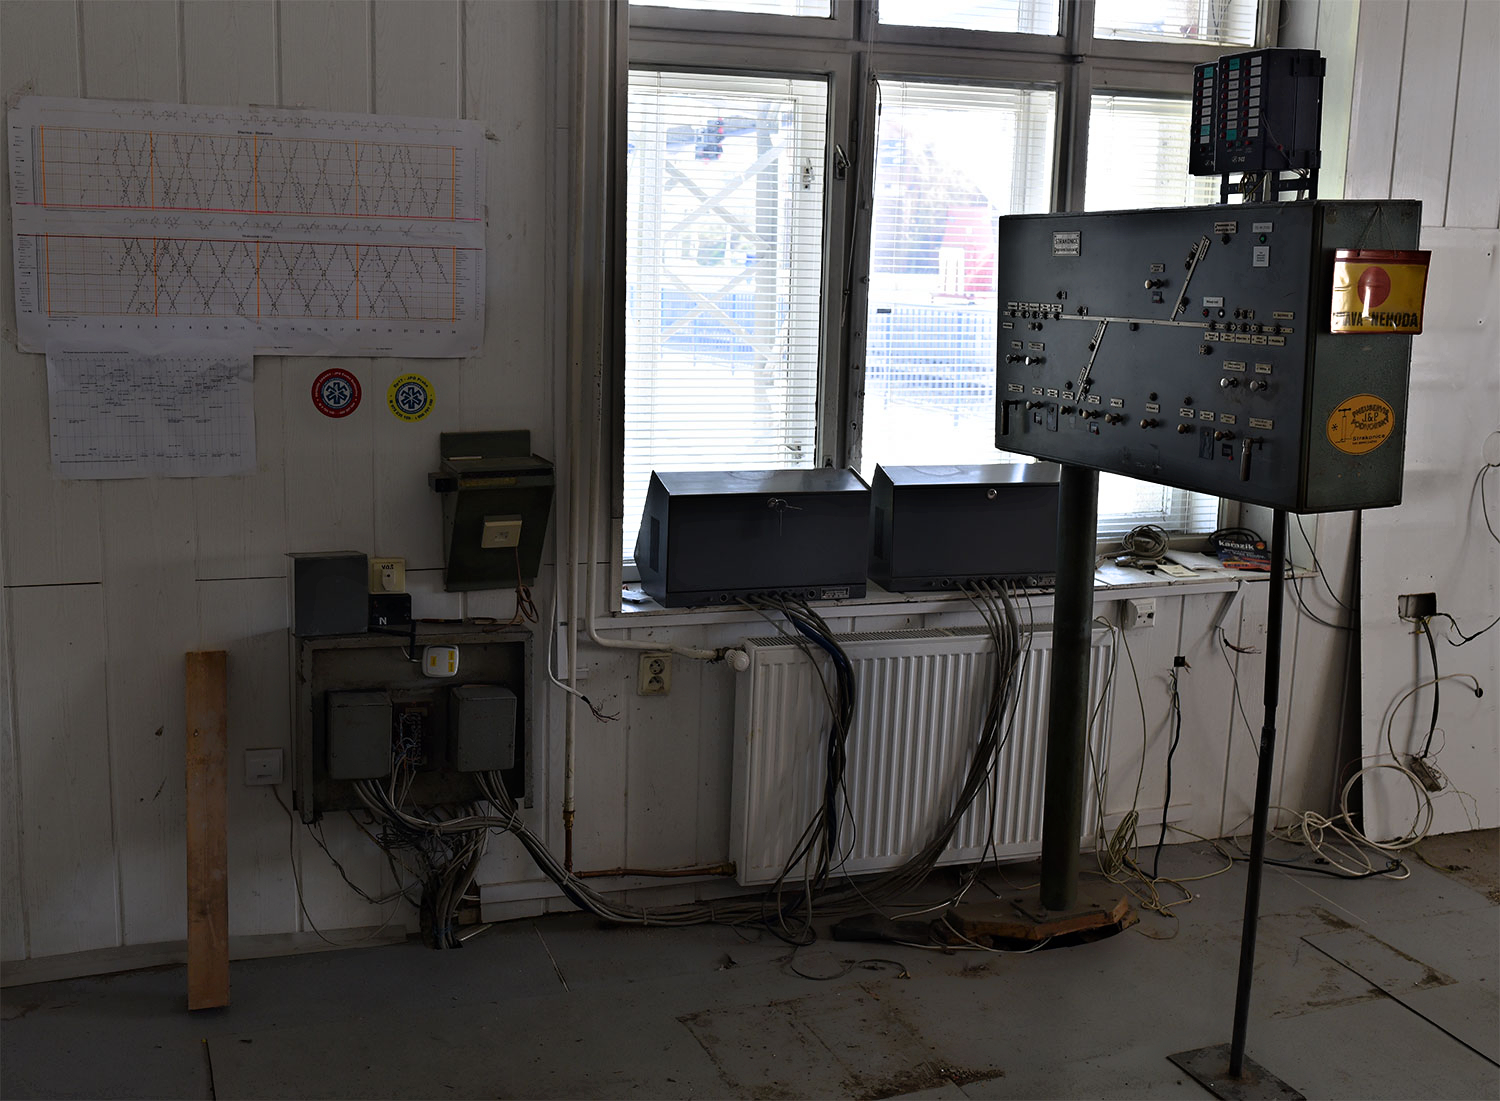 V bývalé dopravní kanceláři se nachází i další technické památky, které mohou být součástí budoucí expozice o železnici ve Strakonicích